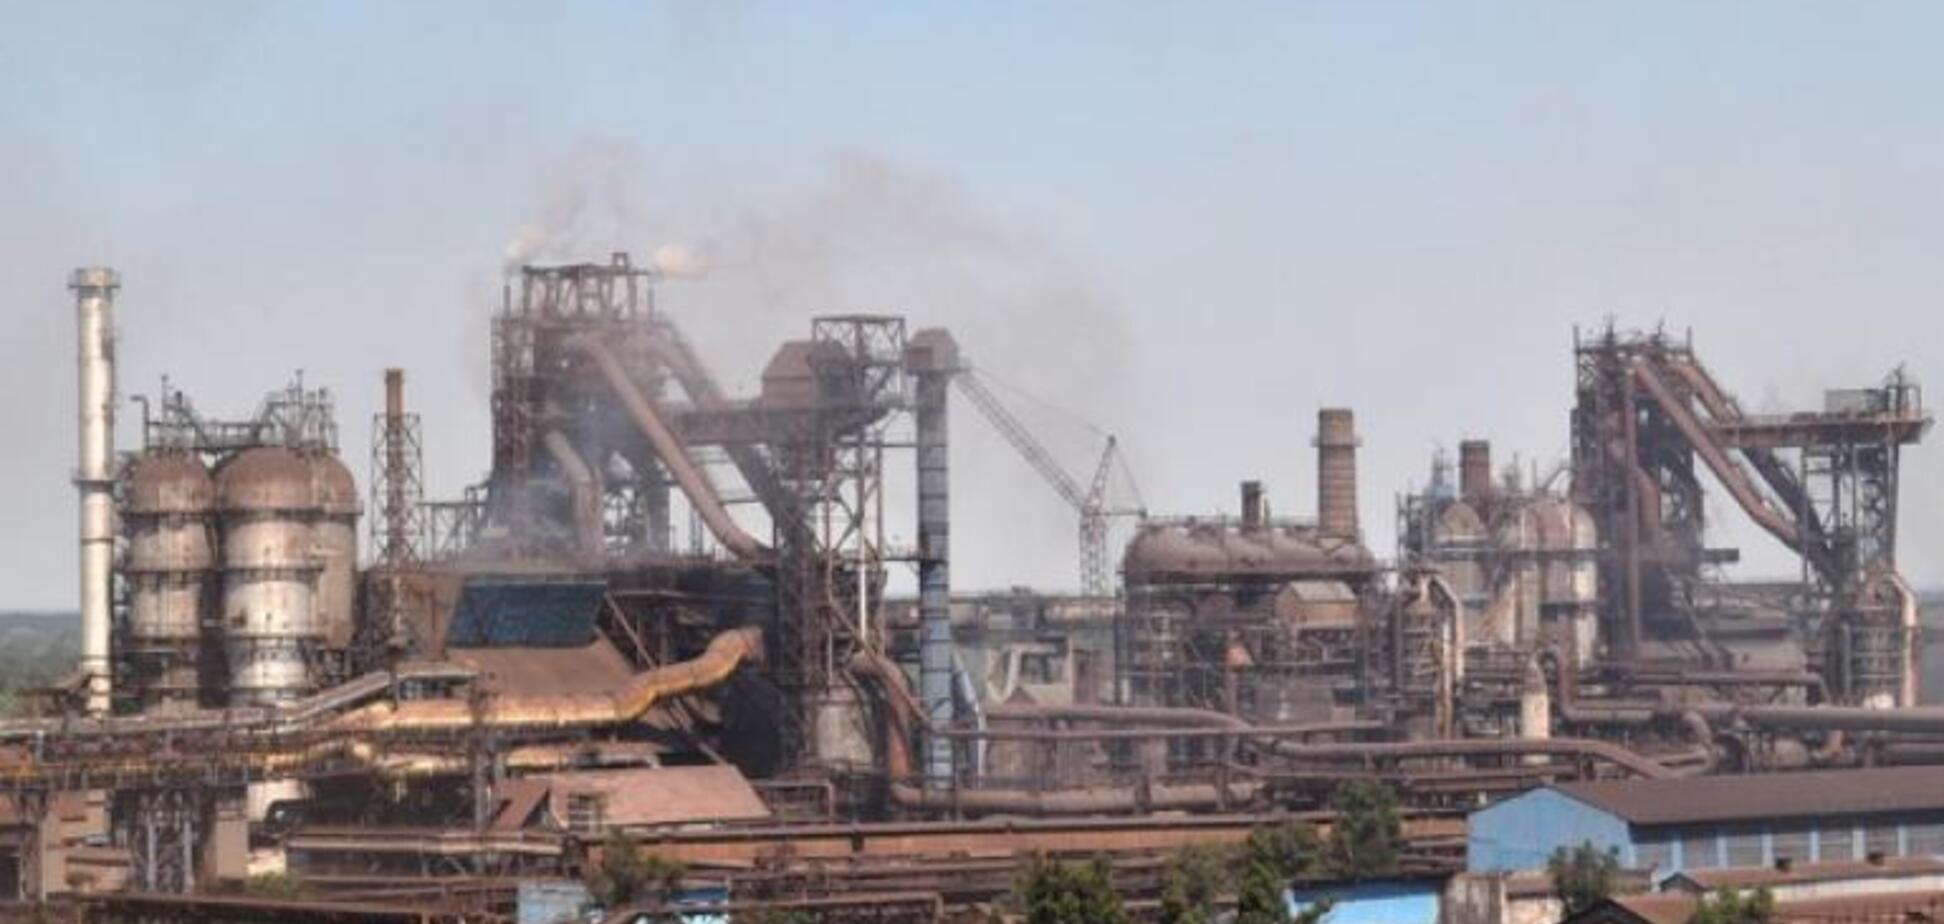 Закон 1210 может остановить металлургический завод в Каменском: горняки обратились к Зеленскому. Видео